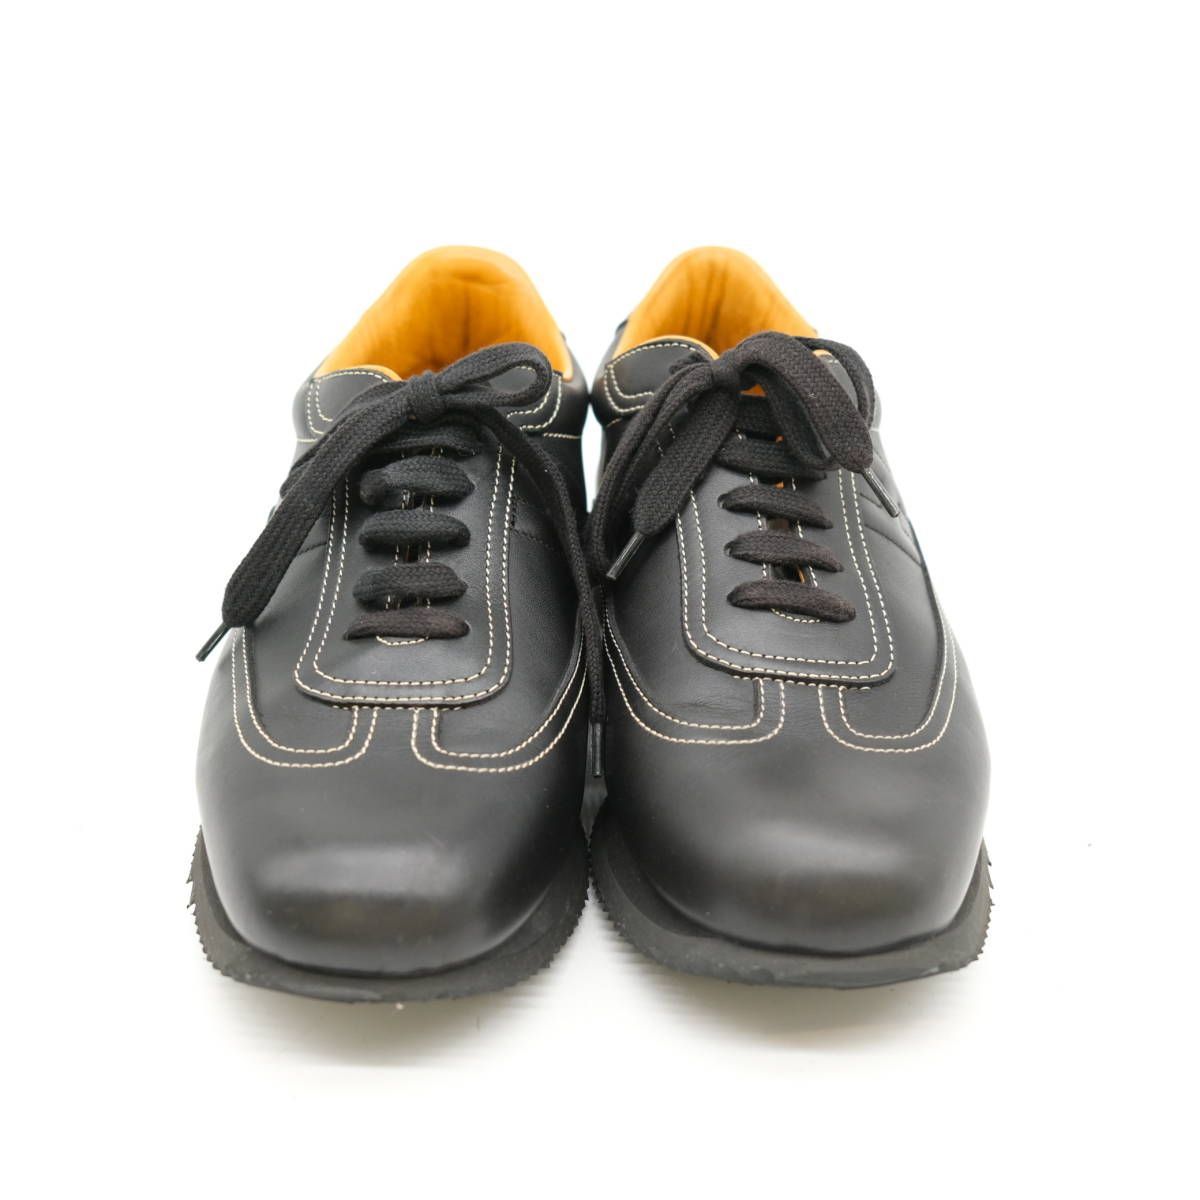 エルメス 靴 スニーカー レザー ブラック #40 1/2 約25.5cm